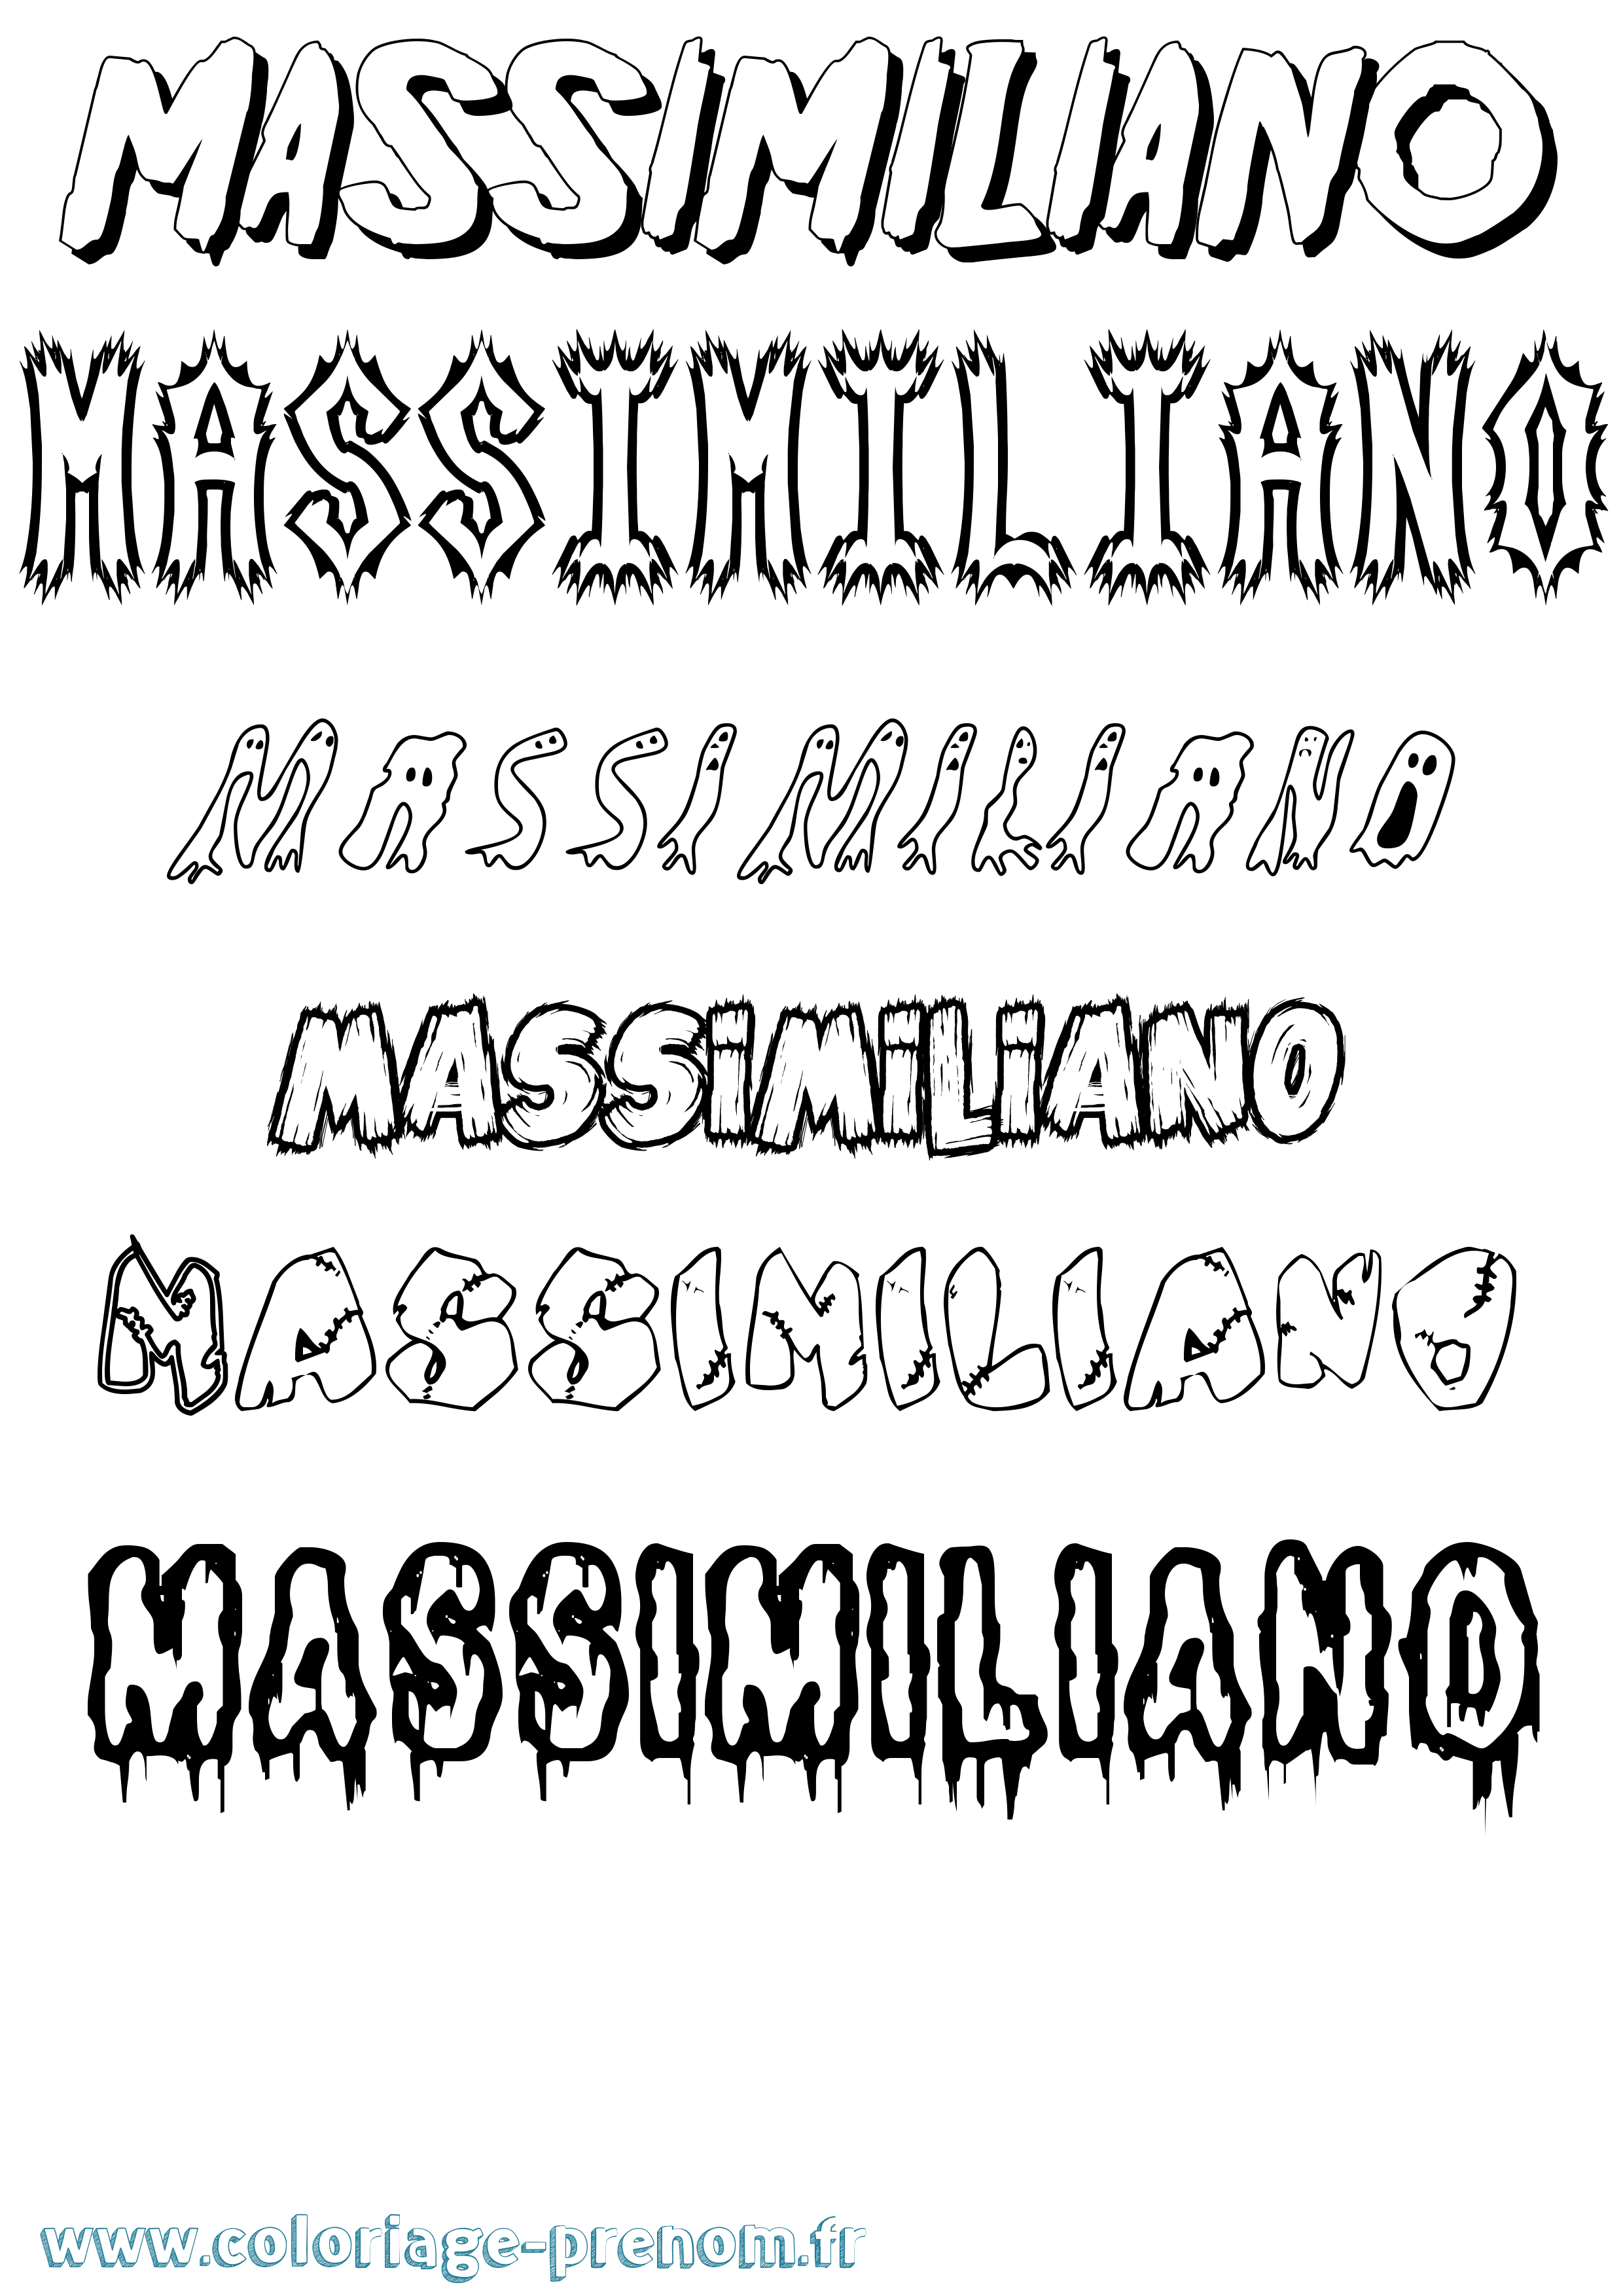 Coloriage prénom Massimiliano Frisson